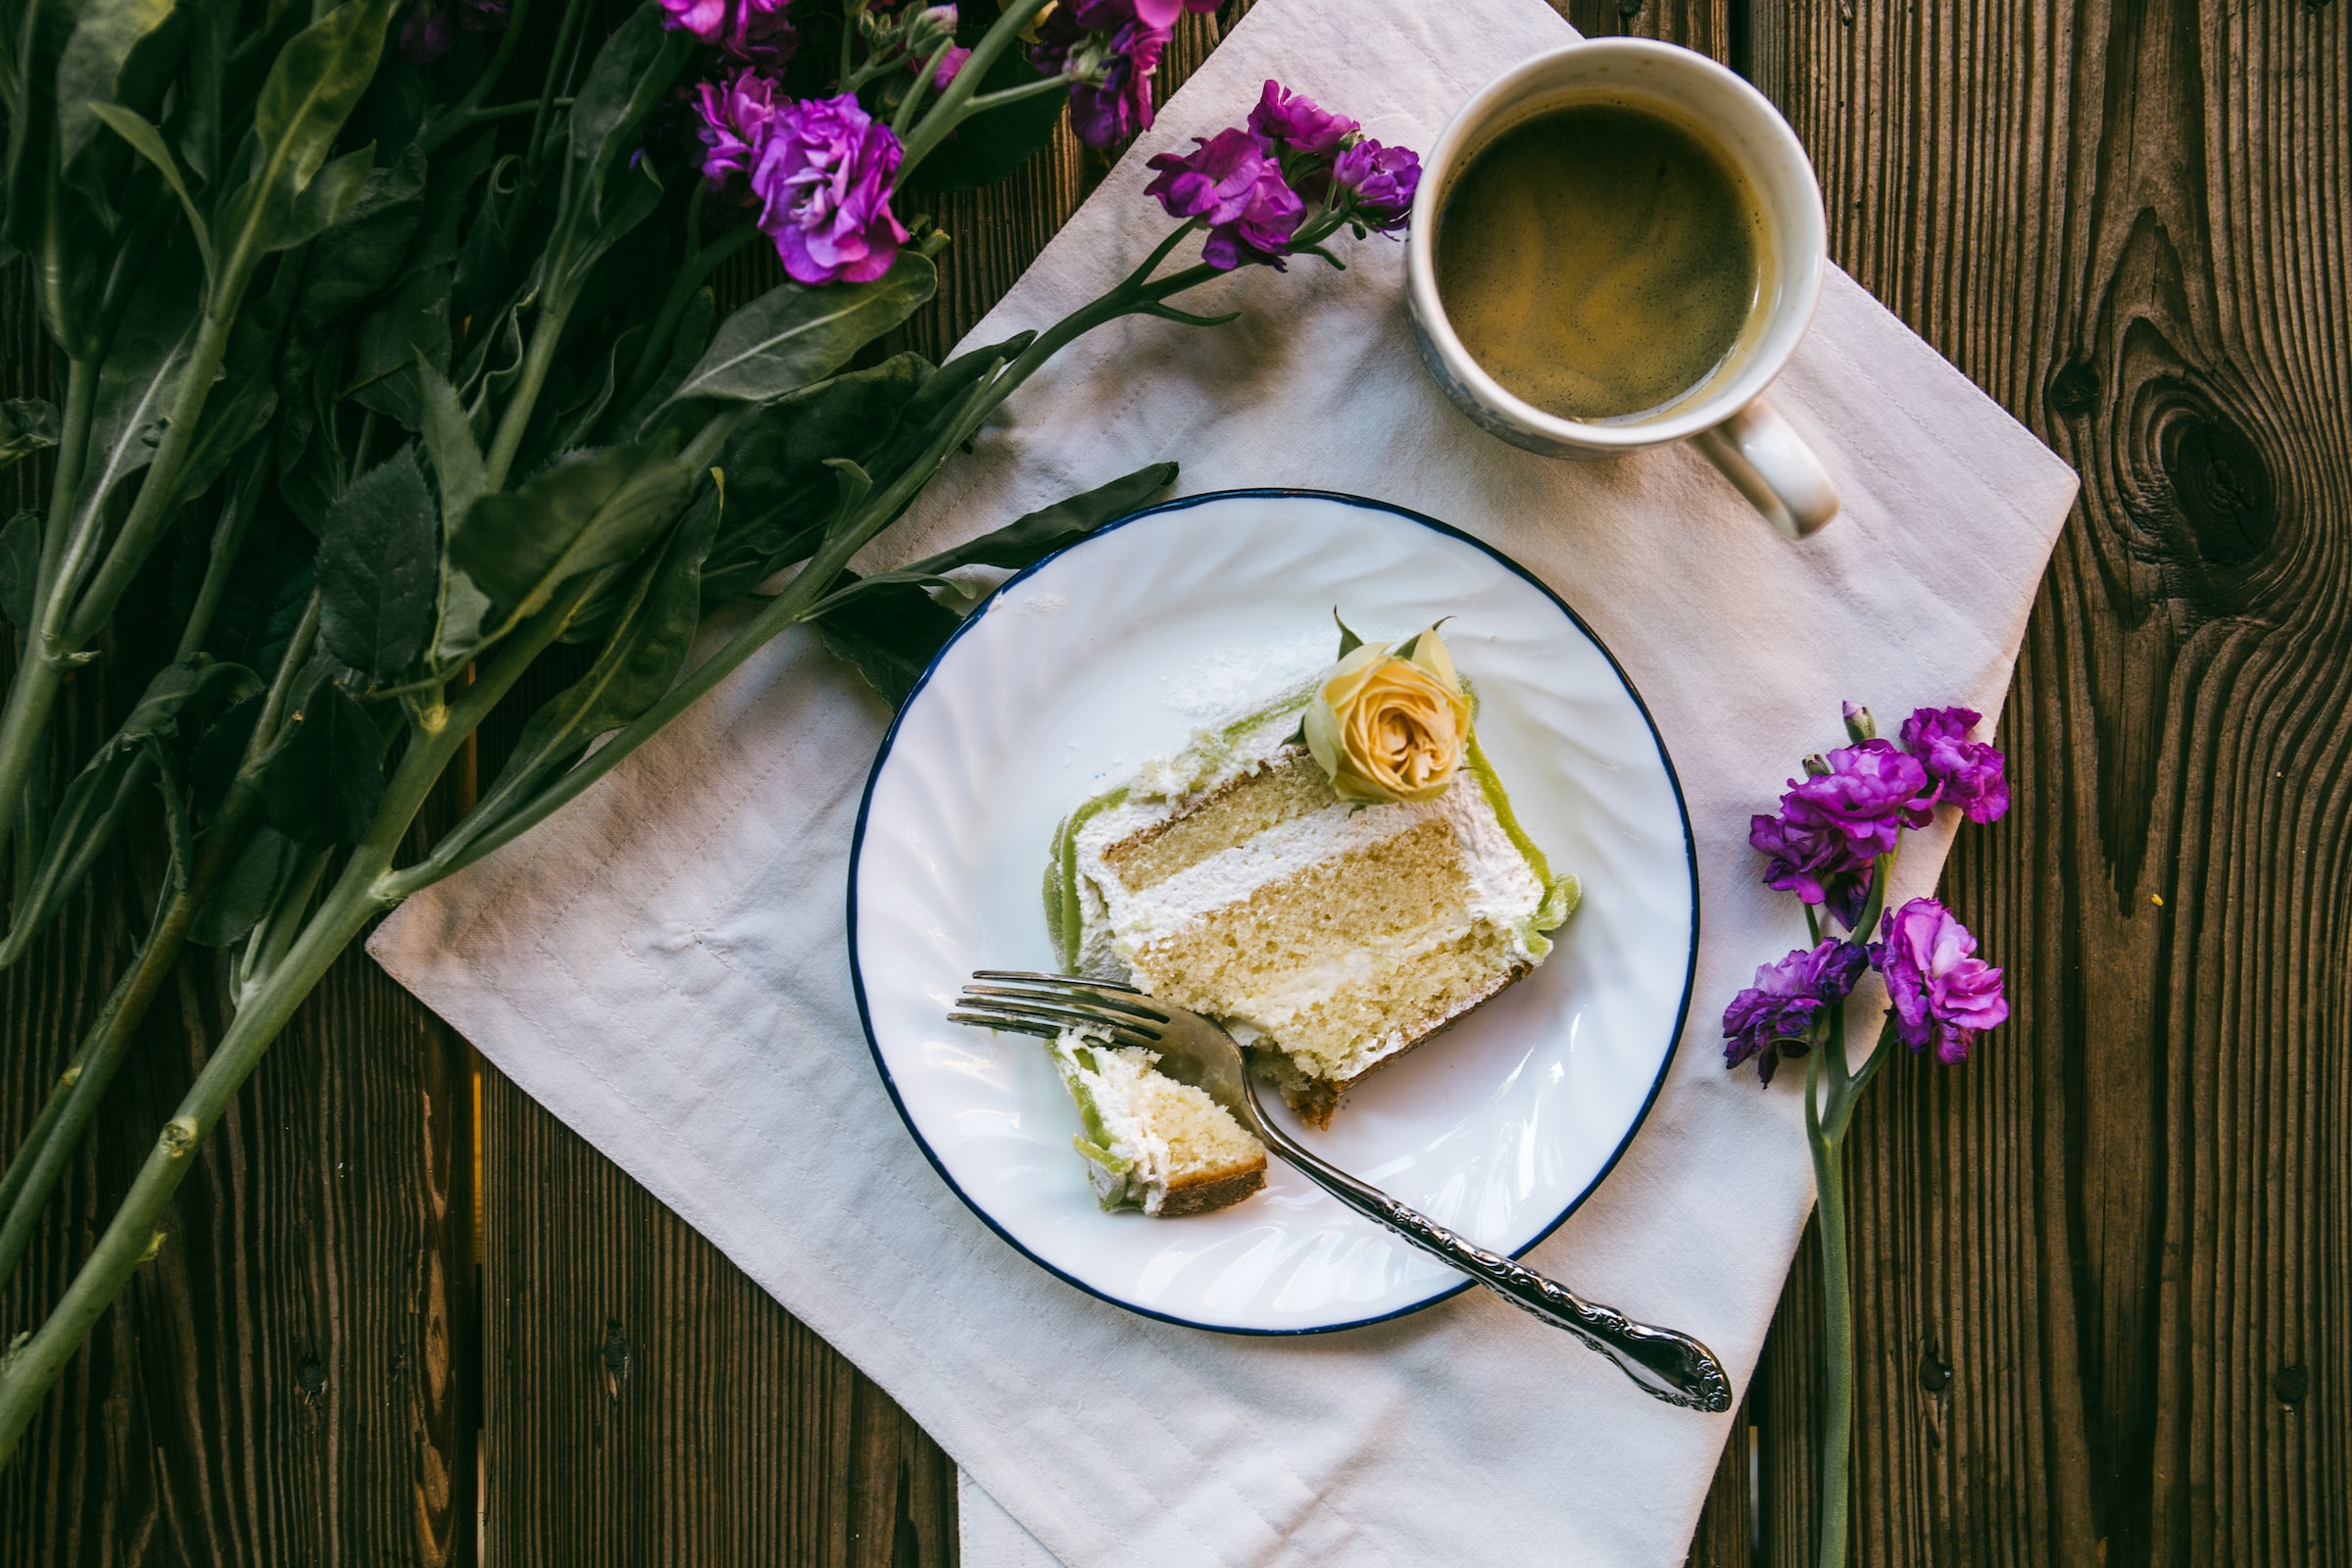 Кусочек кремового торта лежит на белой тарелке. Тарелка стоит на столе, где также есть фиолетовые цветы и чашка с кофе.